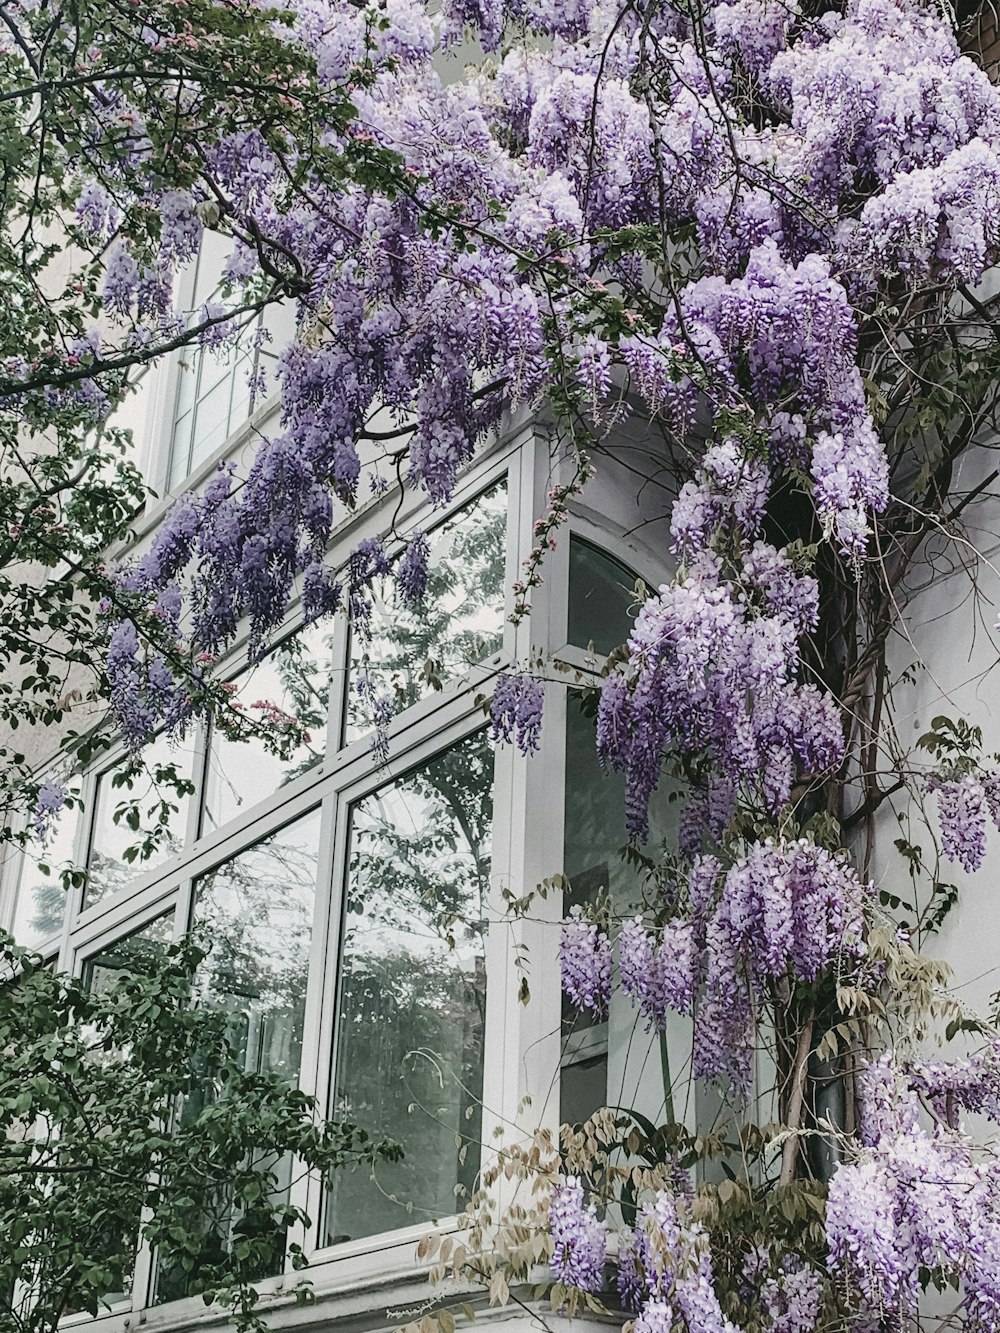 arbustos lilás perto da janela de vidro